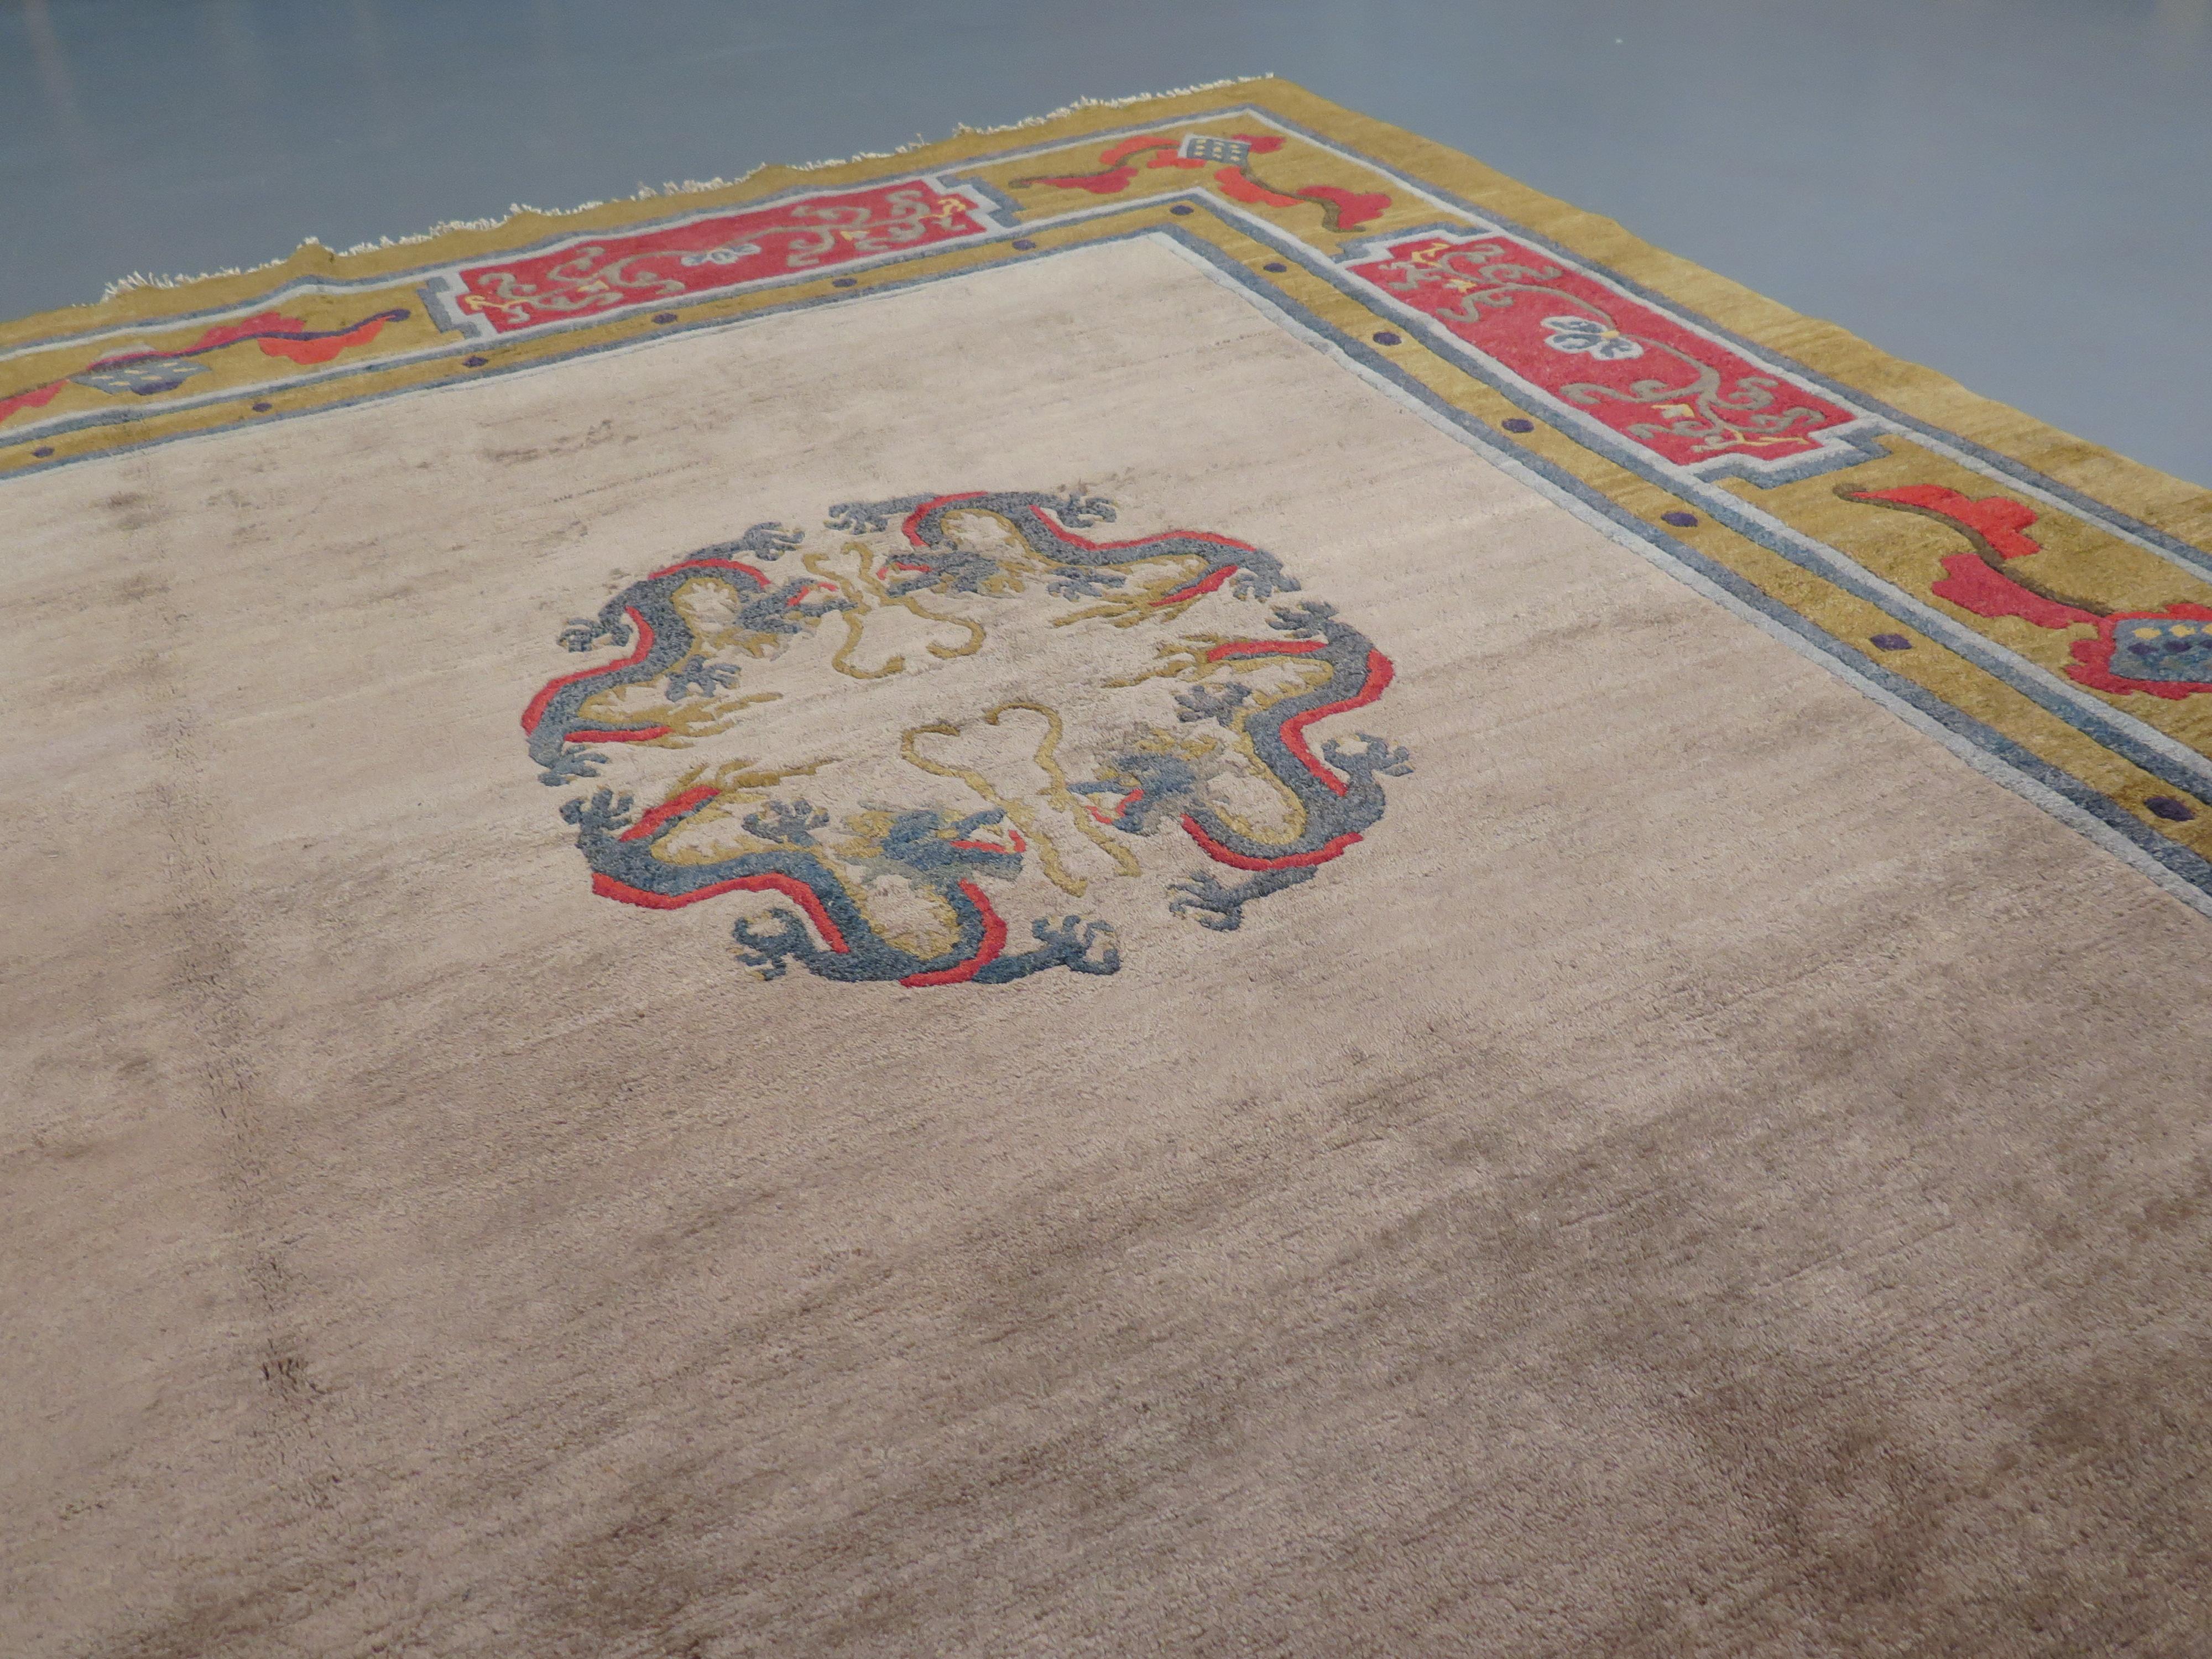 Bien que très peu d'exemples anciens aient survécu, la tradition du tissage des tapis mongols remonte à plusieurs siècles. Elle s'est inspirée en partie des motifs des textiles chinois, empruntant certains dessins caractéristiques, notamment des